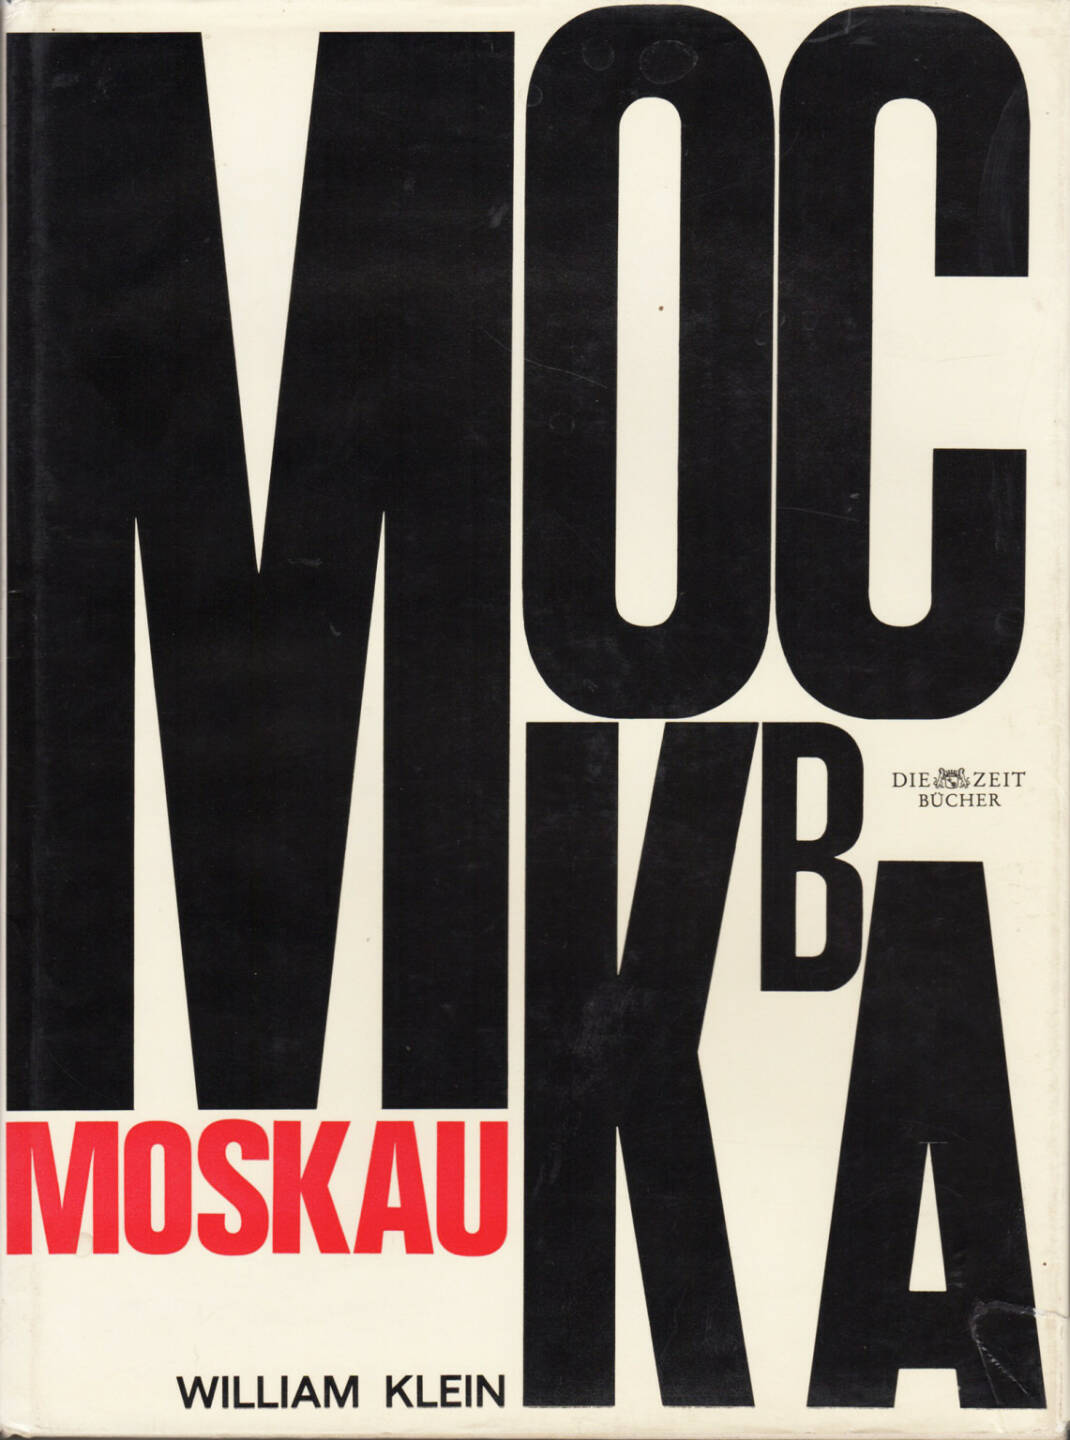 William Klein - Moskau, Nannen-Verlag 1965, Cover - http://josefchladek.com/book/william_klein_-_moskau